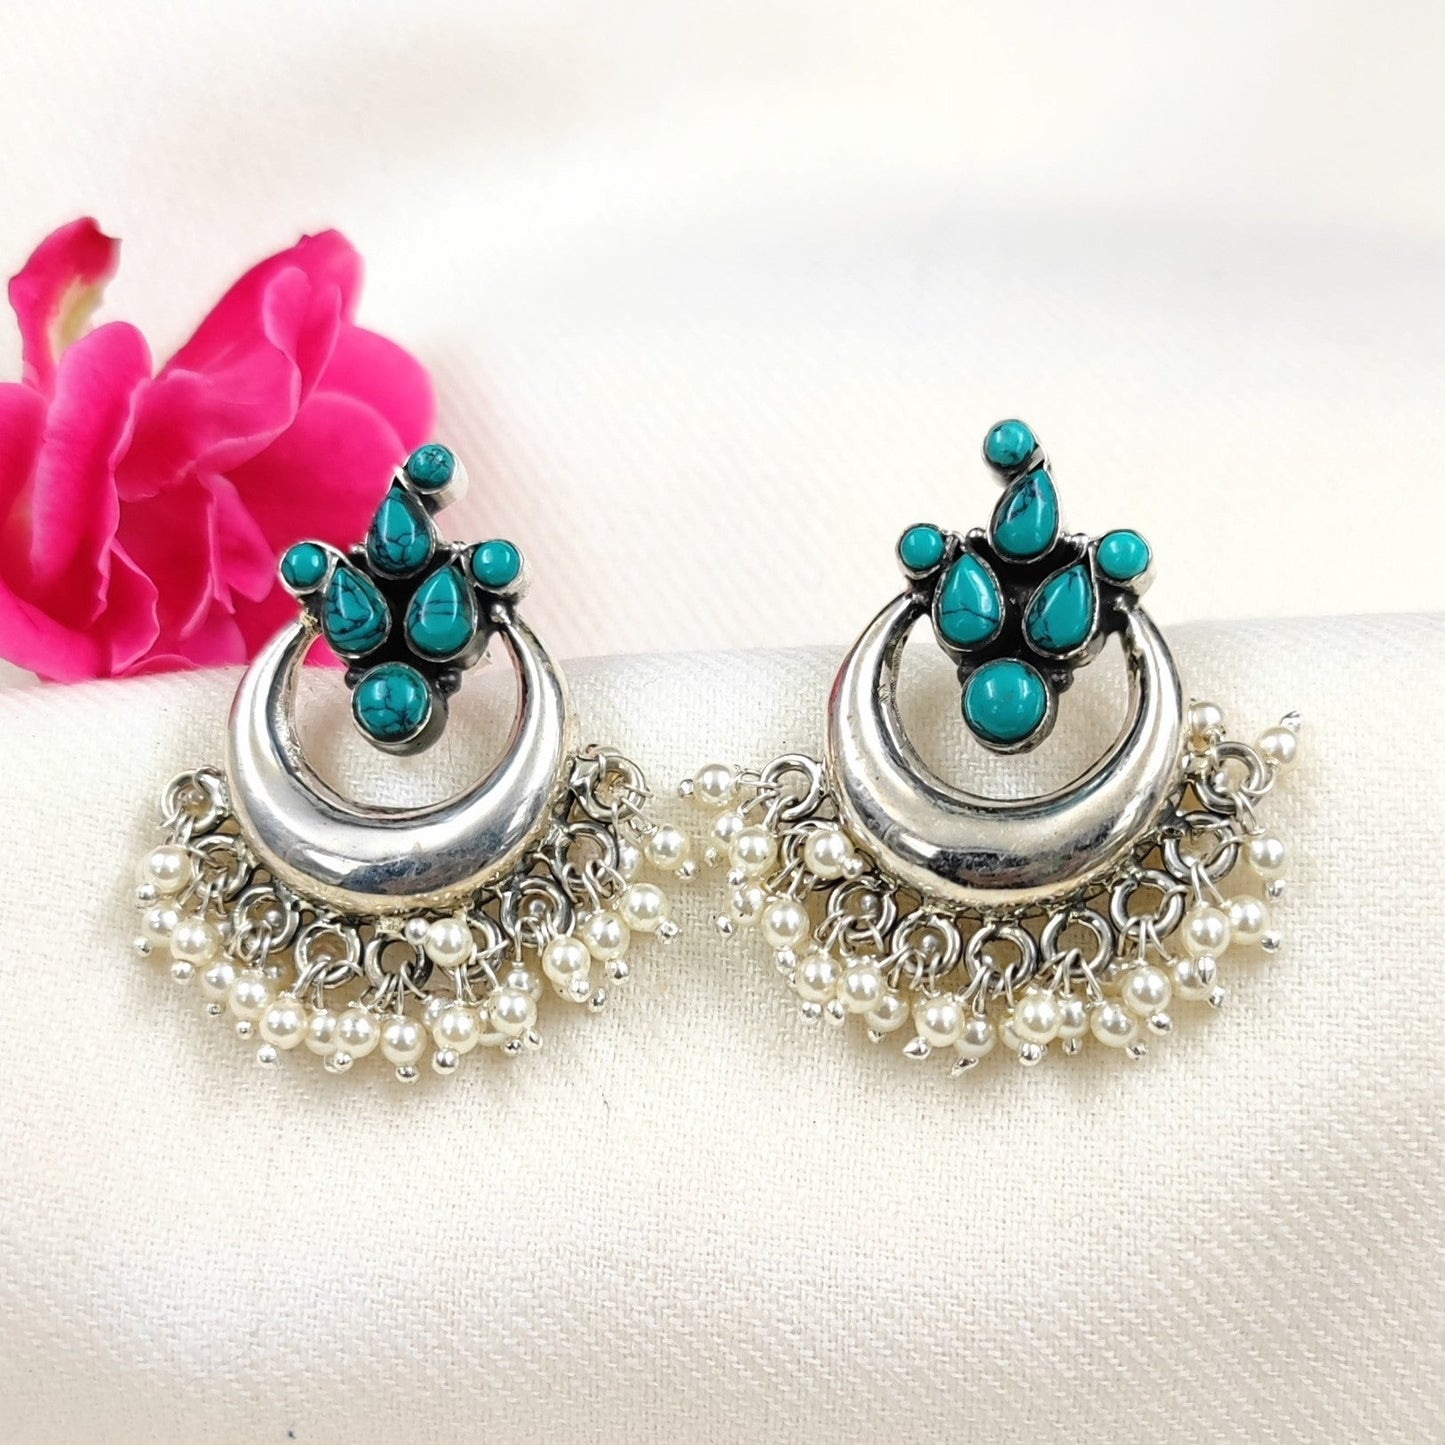 Silver Jewelry Earrings by Jauhri 92.5 Silver - Neel Chandra Earrings